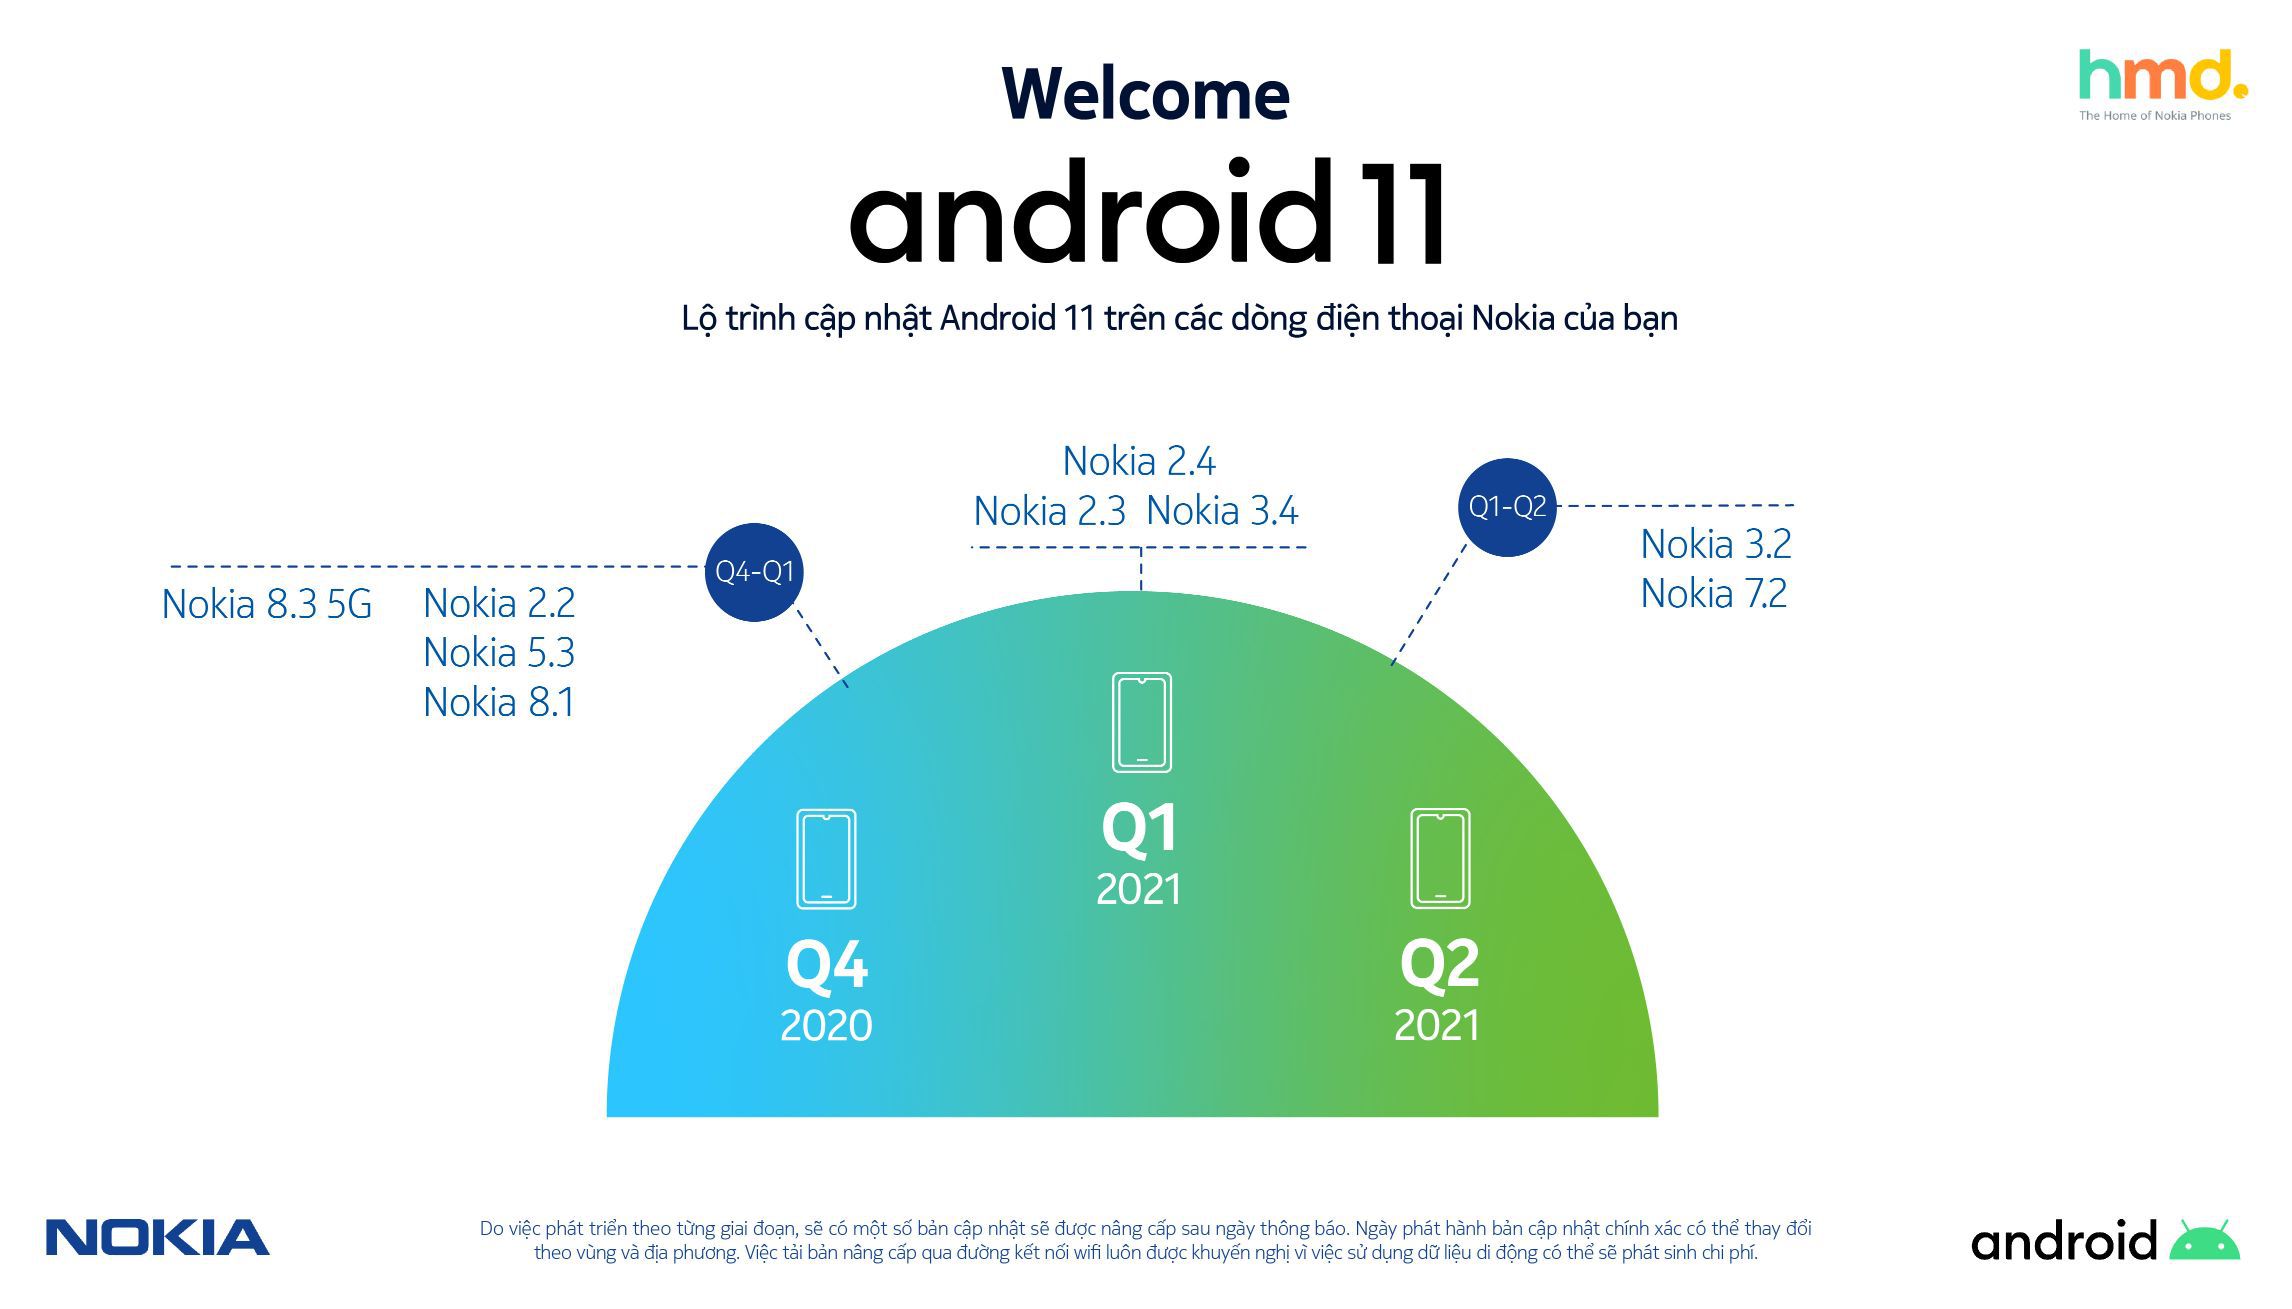 Hmd Global Media Alert Lộ Trình Cập Nhật Android 11 Cho Các Dòng Smartphone Nokia Trong Thời Gian Tới 1